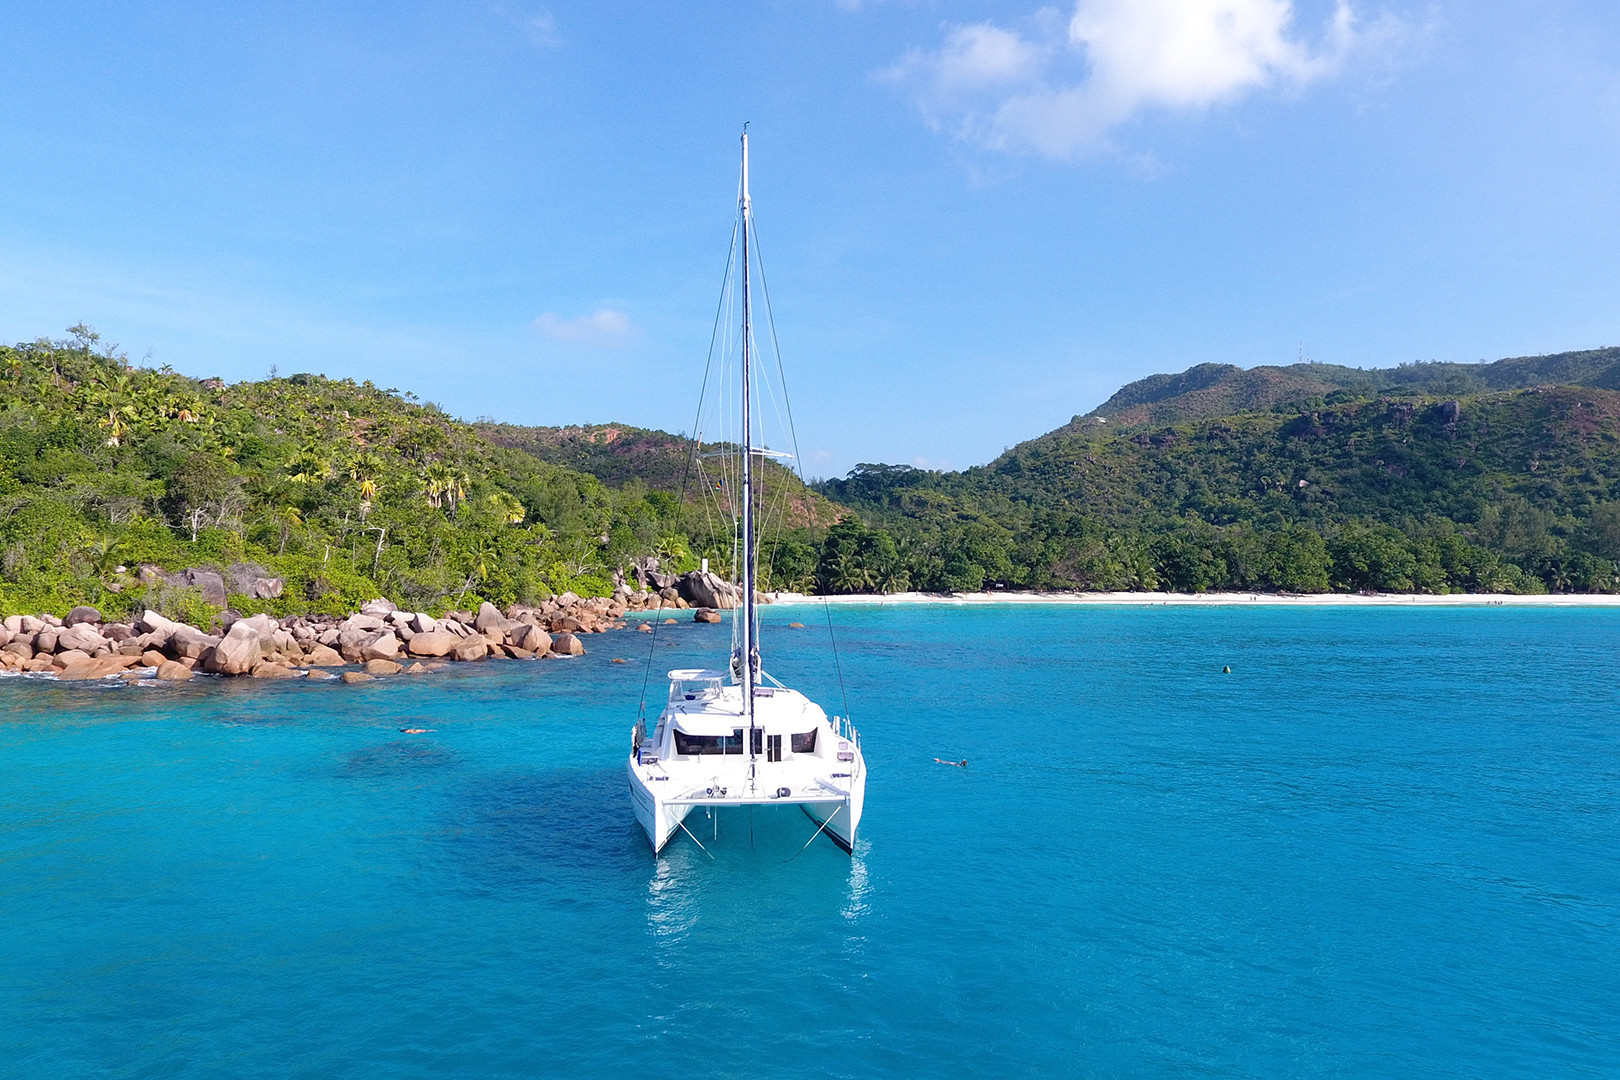 Croisières en mini-catamaran: une expérience inoubliable de paradis cachés, de romantisme et de liberté absolue